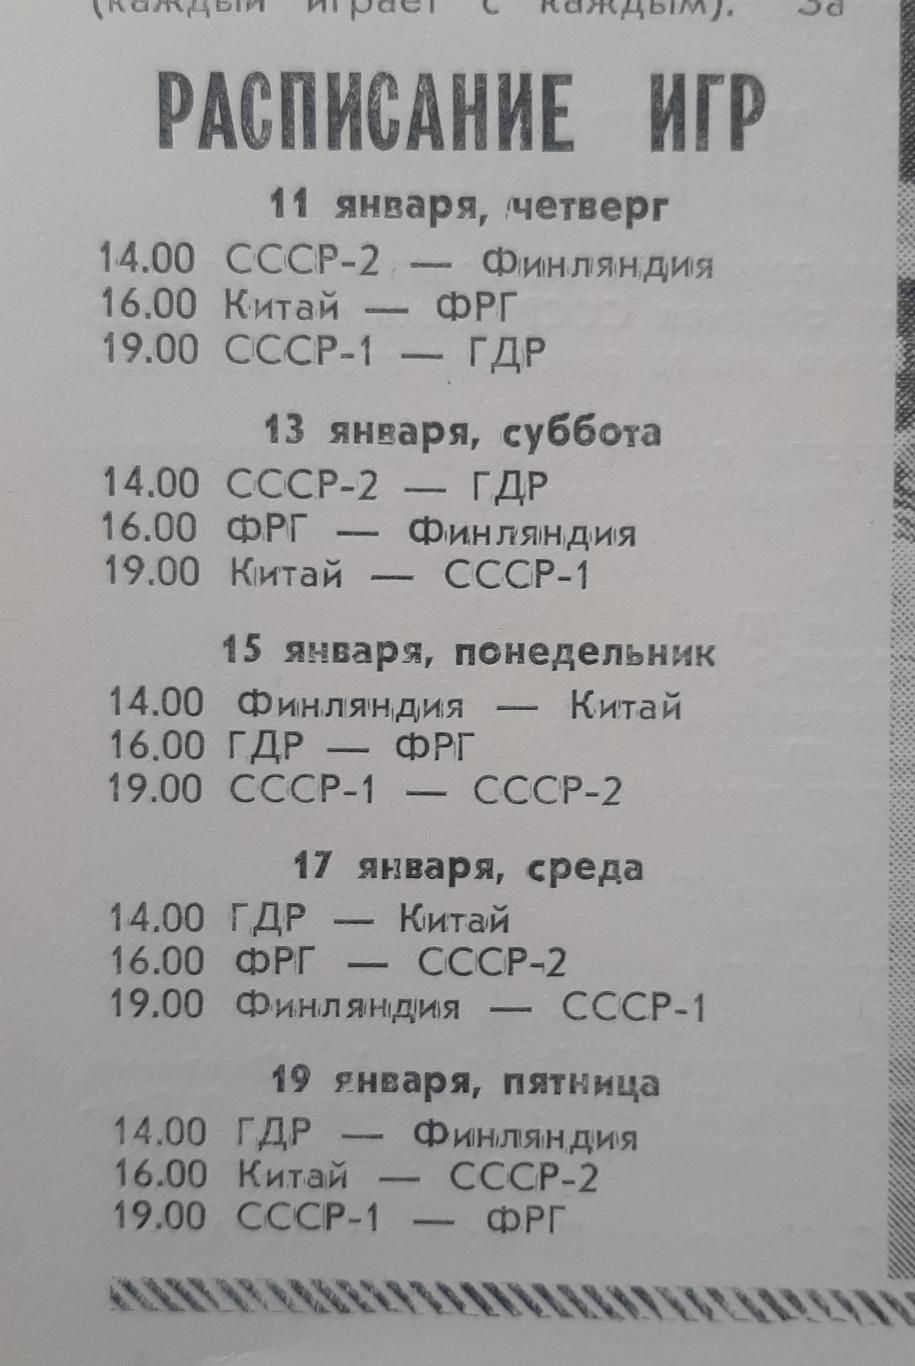 10-й міжнародний юнацький турнір пам'яті Гранаткіна 11-19.01.1990 1